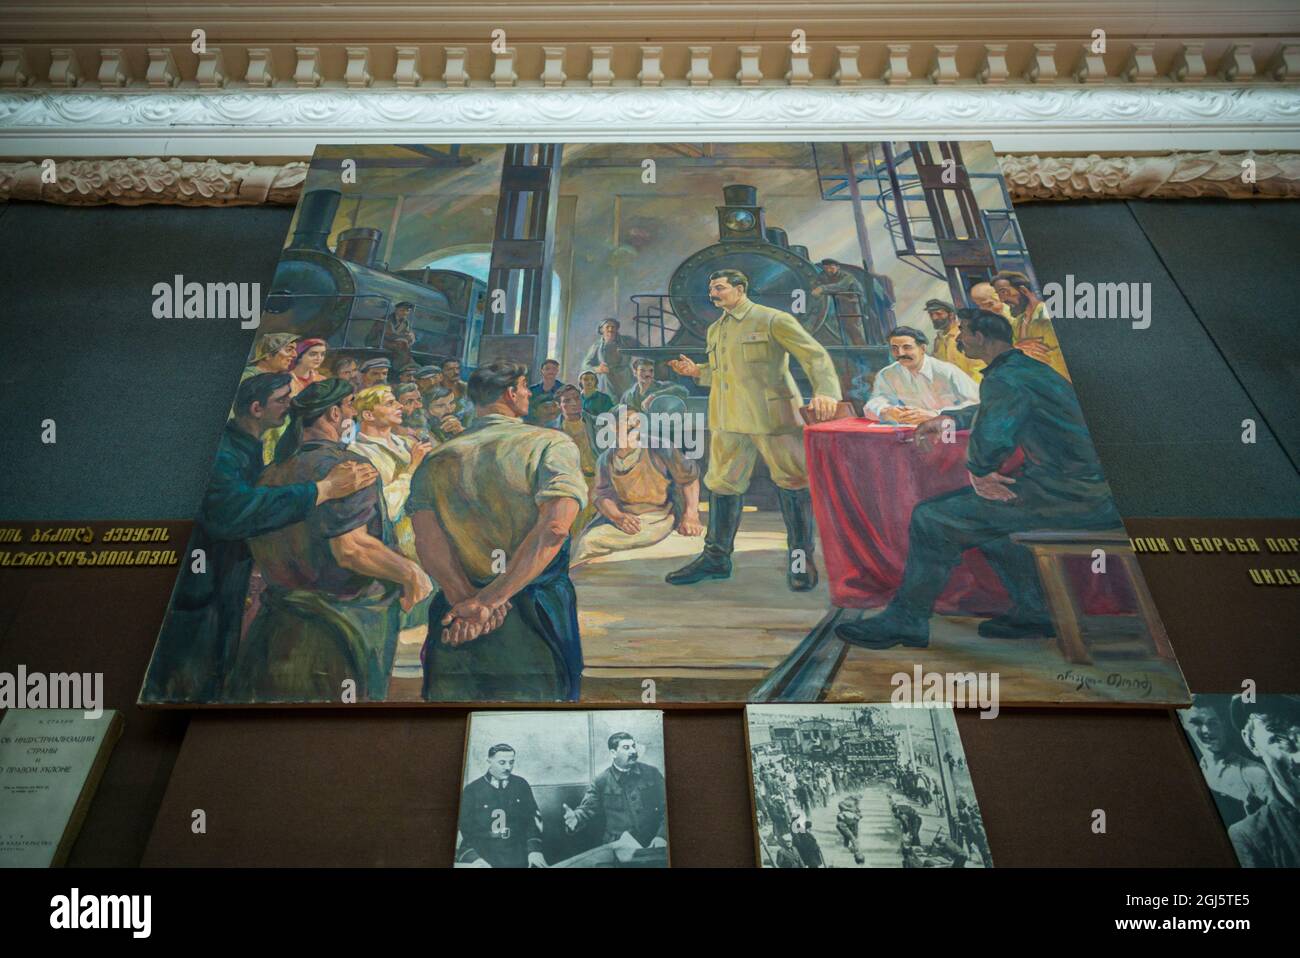 Georgia, Gori. Museo Stalin dedicato all'ex dittatore sovietico Joseph Stalin, dipinto di Stalin. Foto Stock